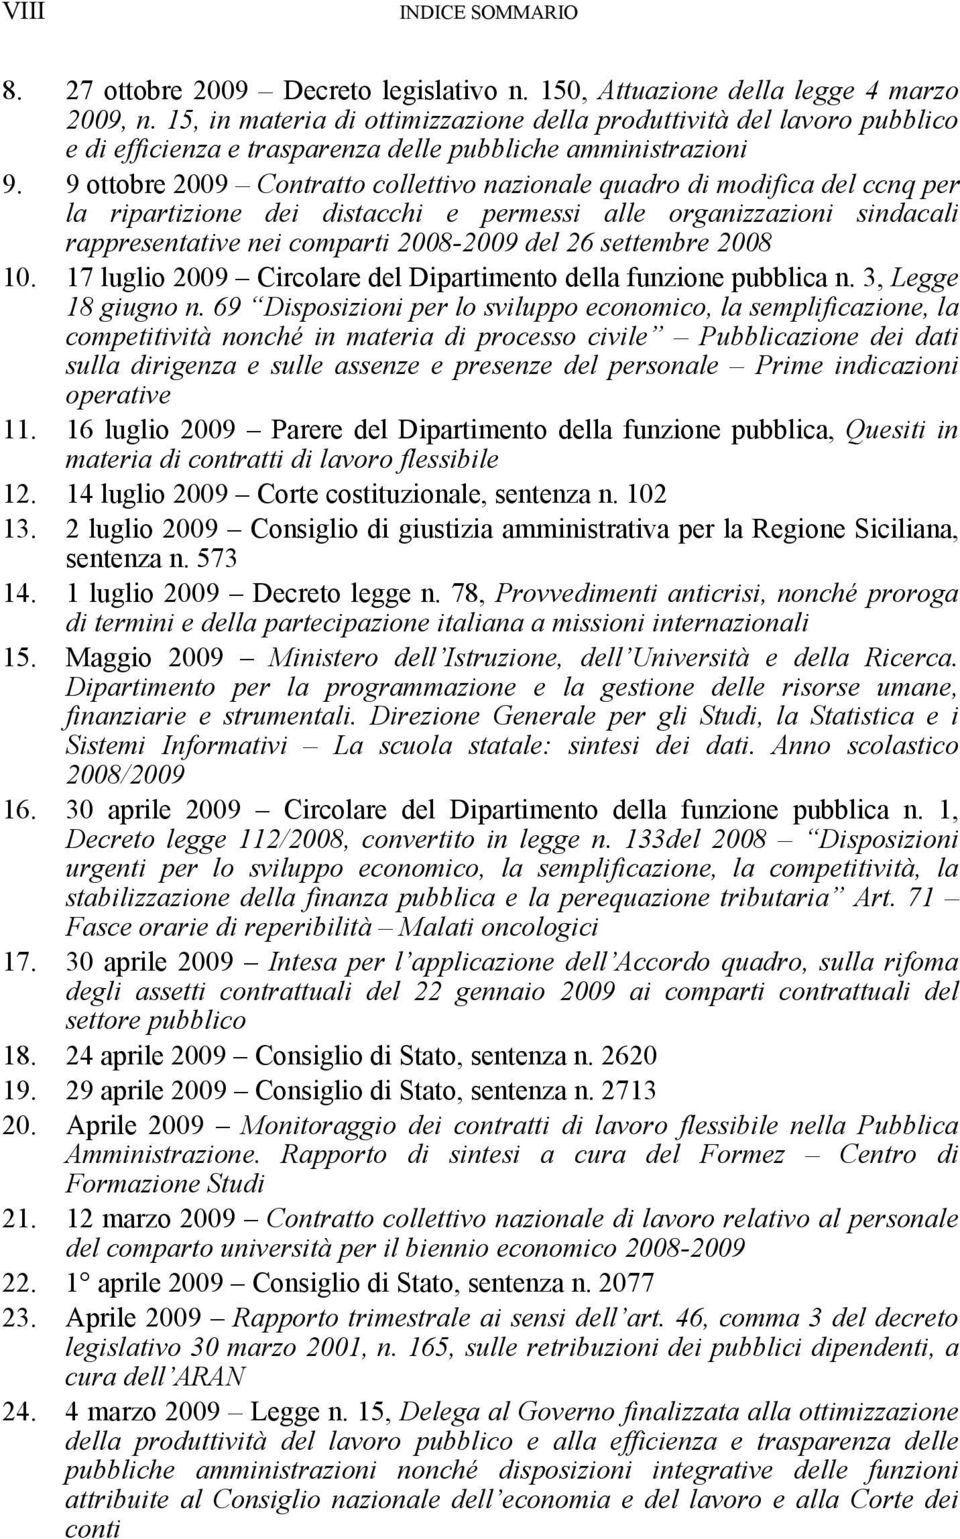 9 ottobre 2009 Contratto collettivo nazionale quadro di modifica del ccnq per la ripartizione dei distacchi e permessi alle organizzazioni sindacali rappresentative nei comparti 2008-2009 del 26